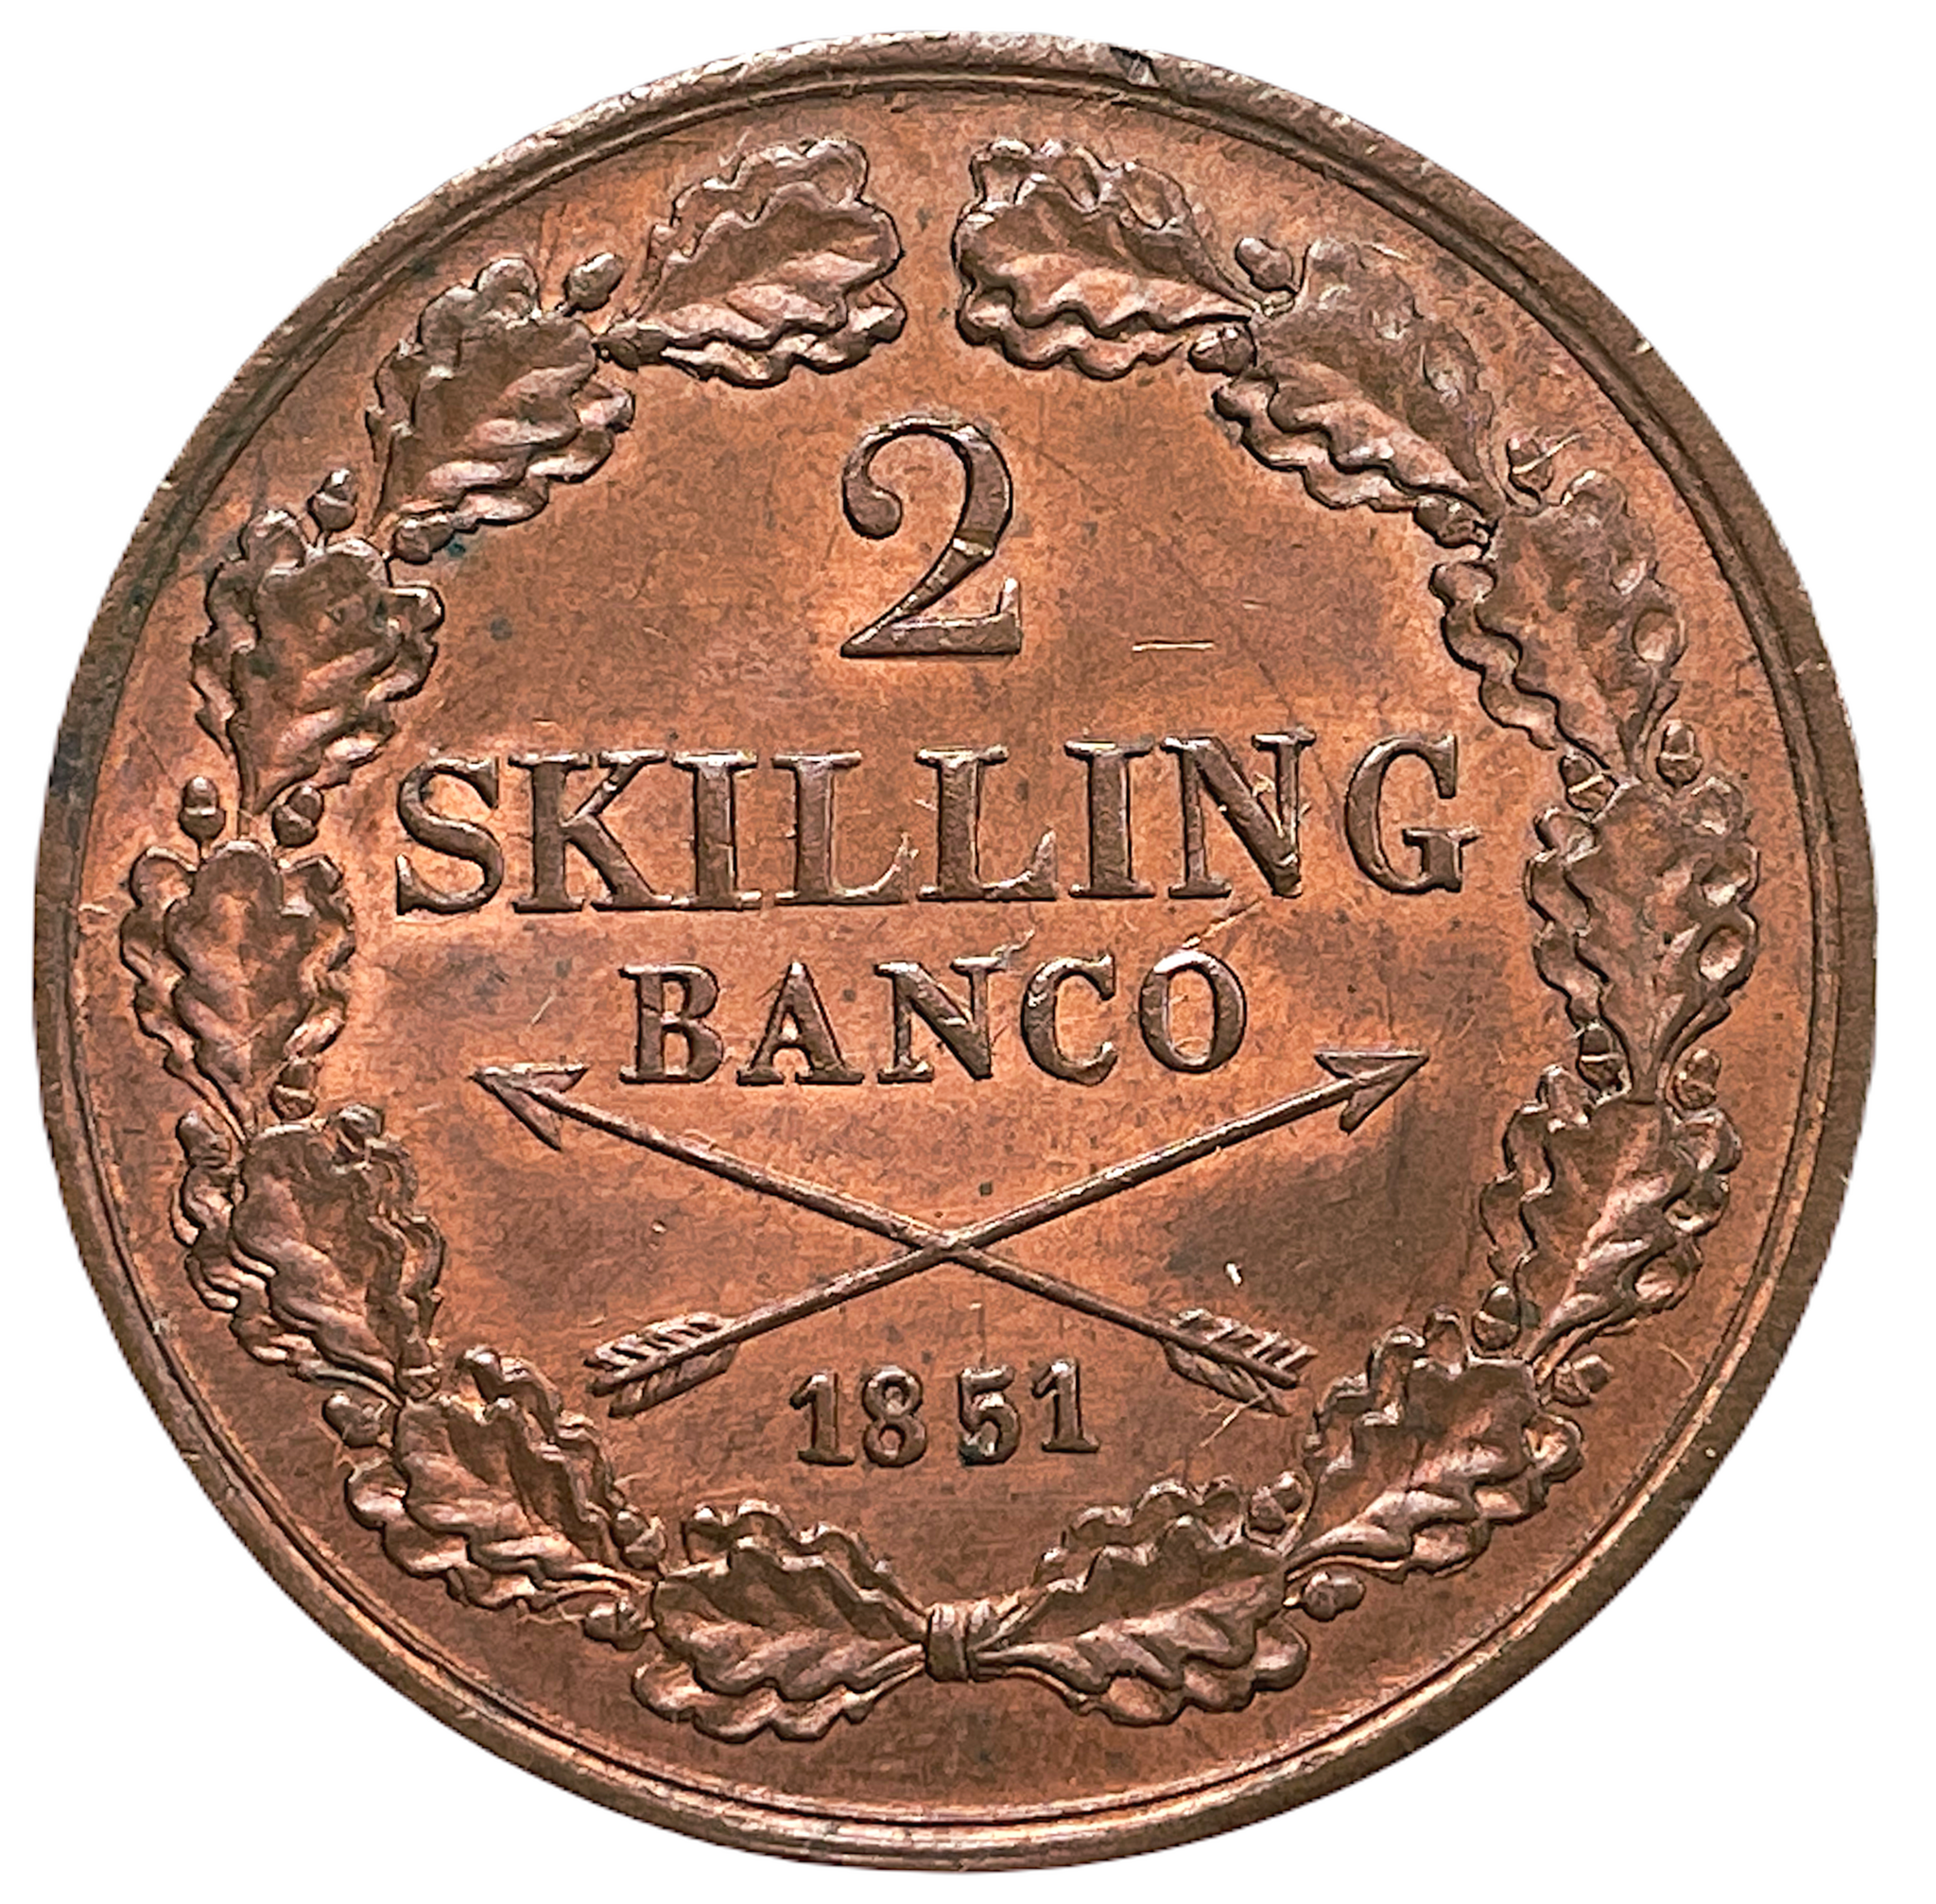 Oskar I - 2 Skilling Banco 1851 - Vackert rött ocirkulerat exemplar